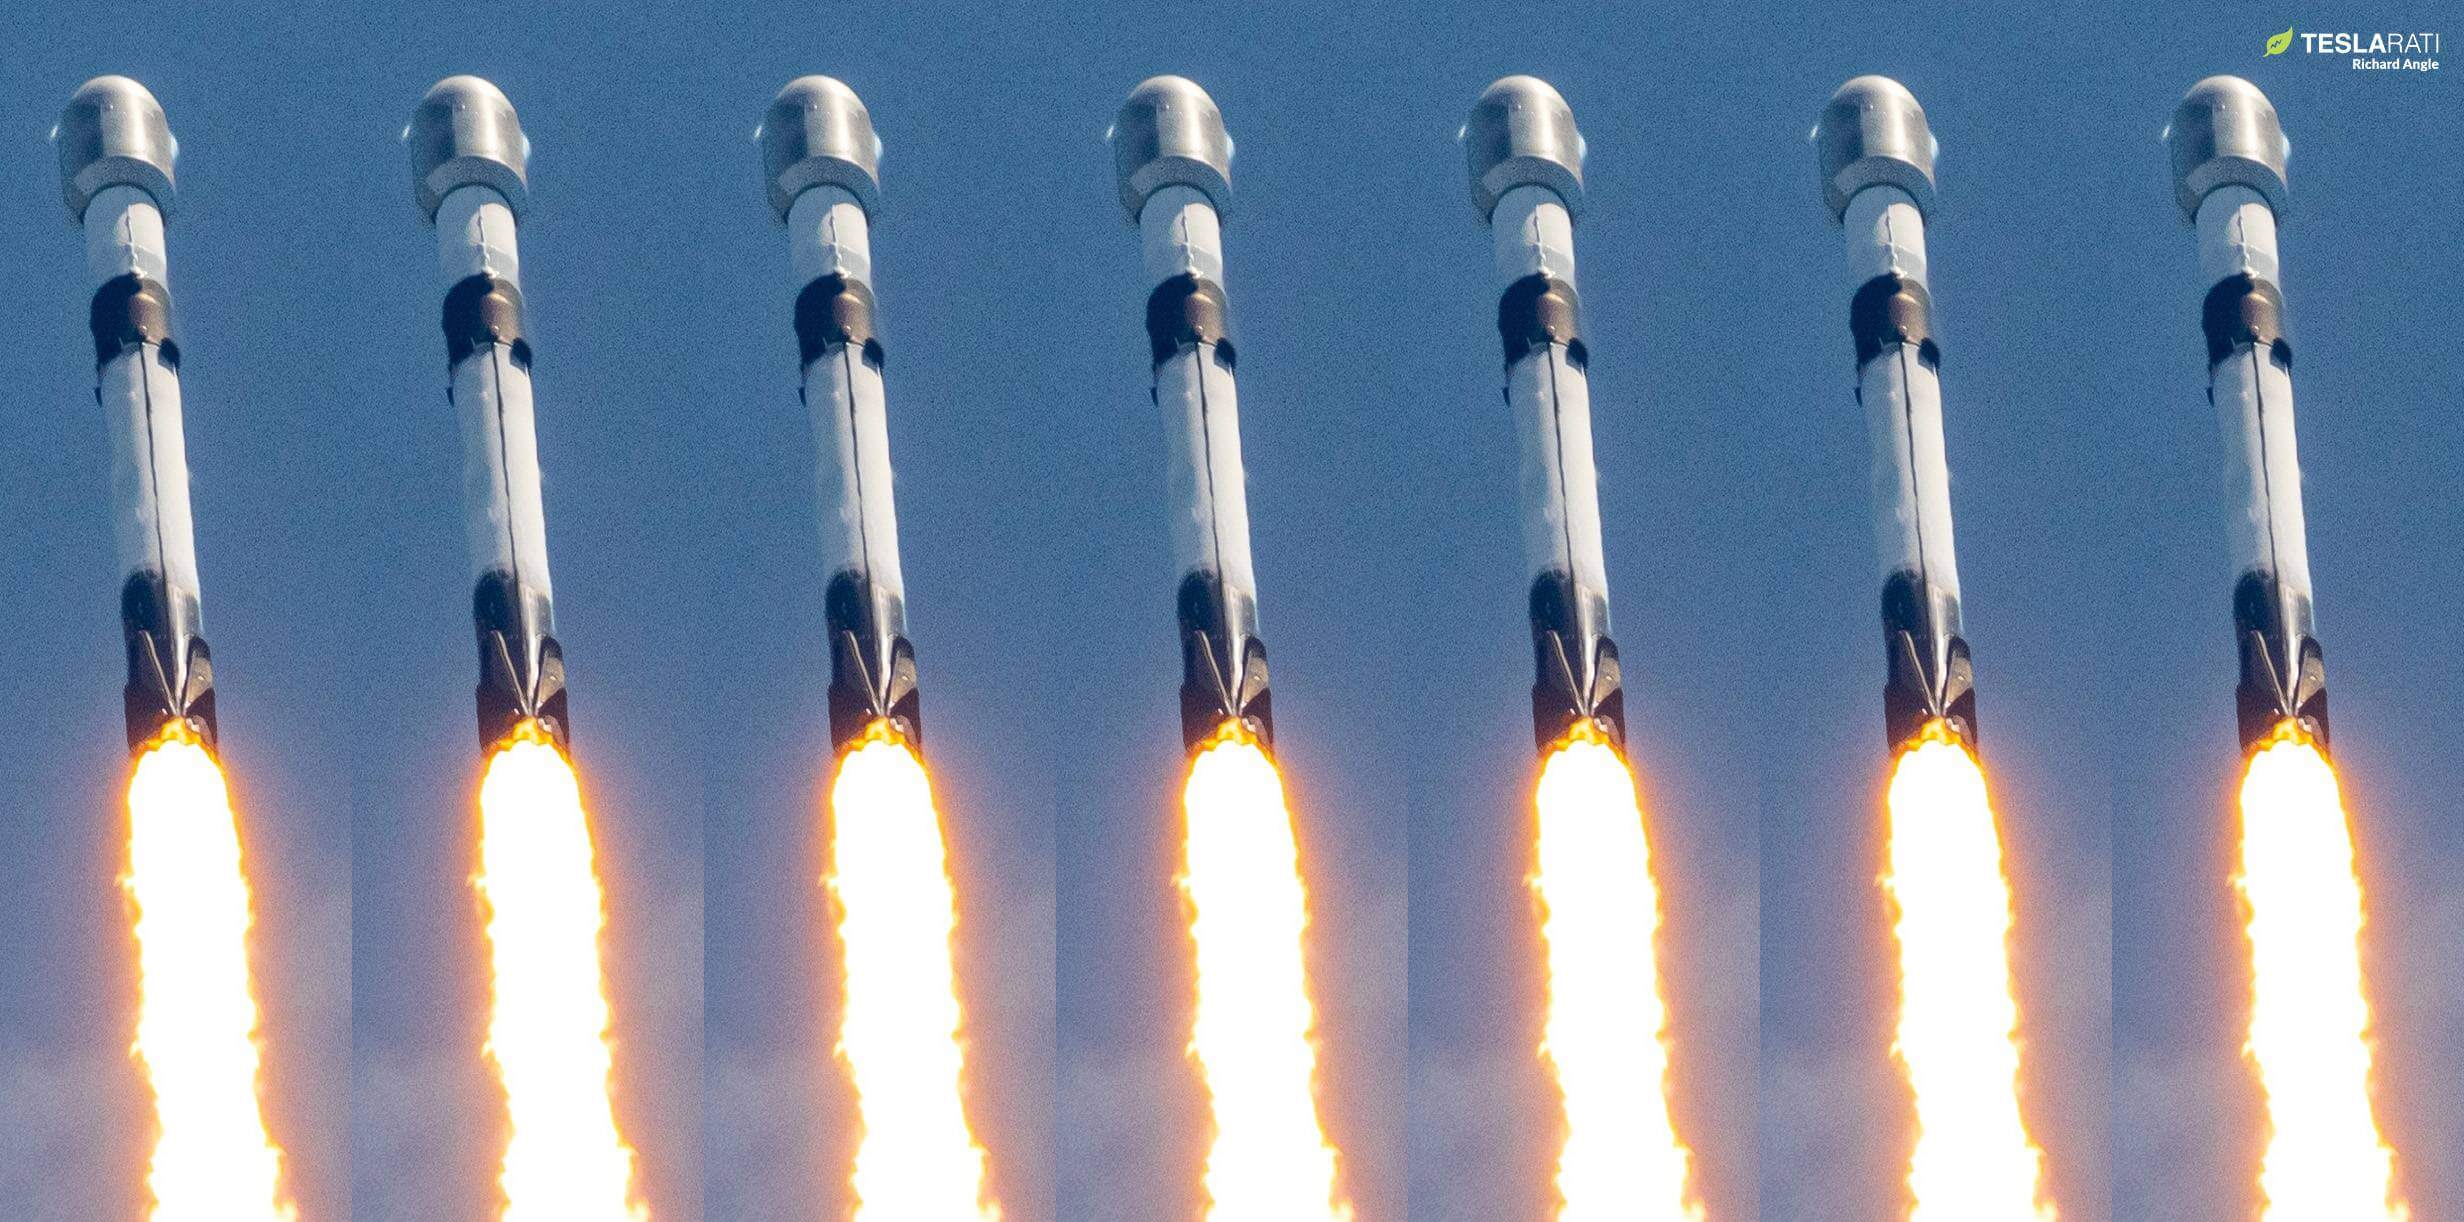 Elon Musk’s doel van 100 lanceringen van SpaceX in 2023 lijkt verrassend haalbaar